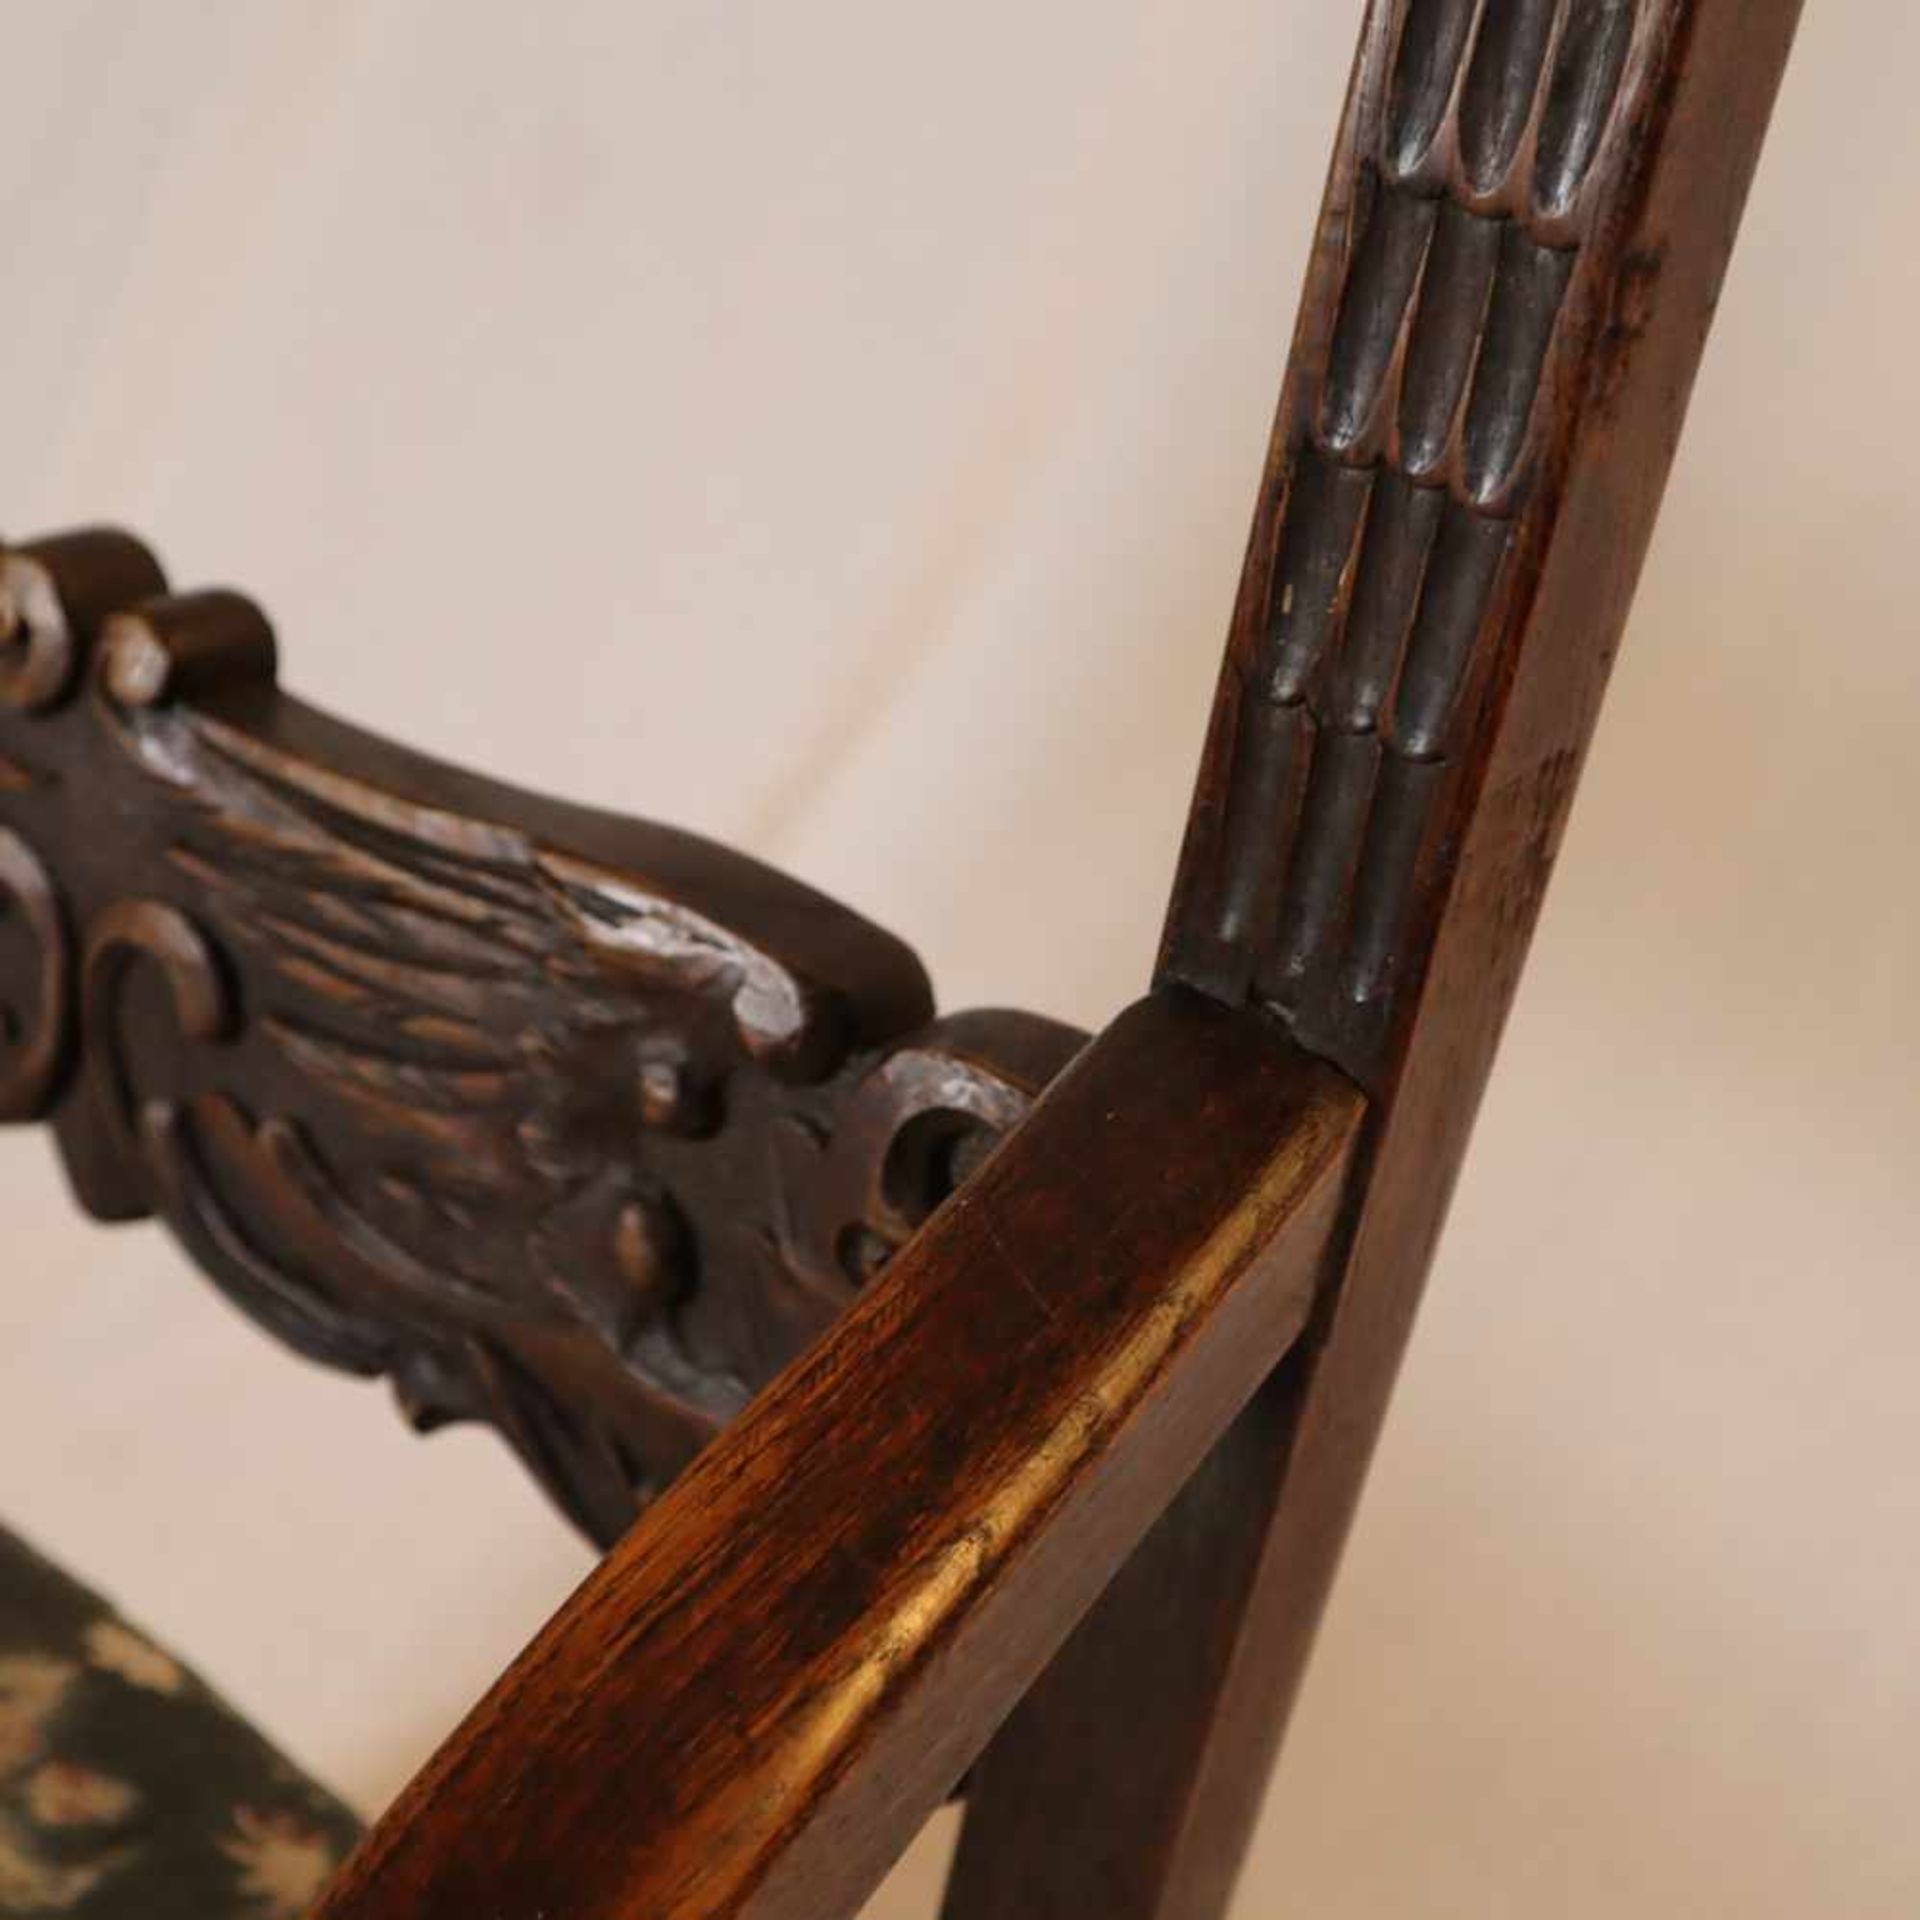 Abtsessel - historistischer Armlehnstuhl, Holz, reich beschnitzt mit Fabeltieren, Rankenwerk sowie - Bild 5 aus 15